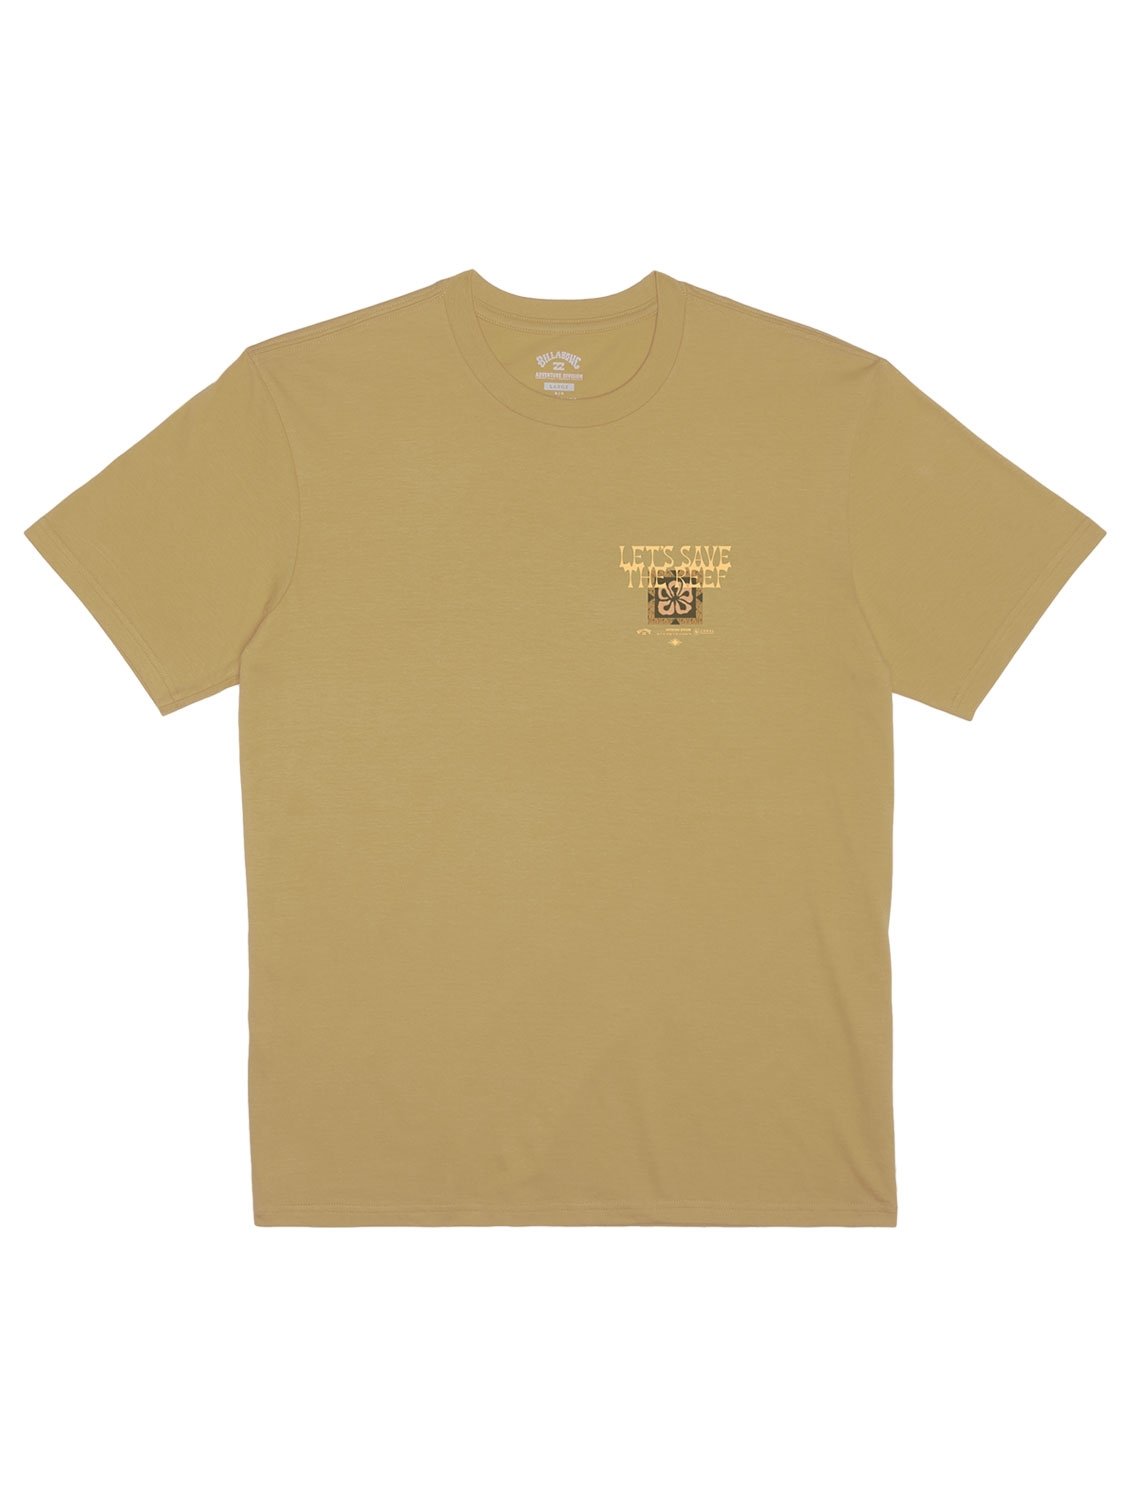 Billabong Men's Tiki Reef T-Shirt